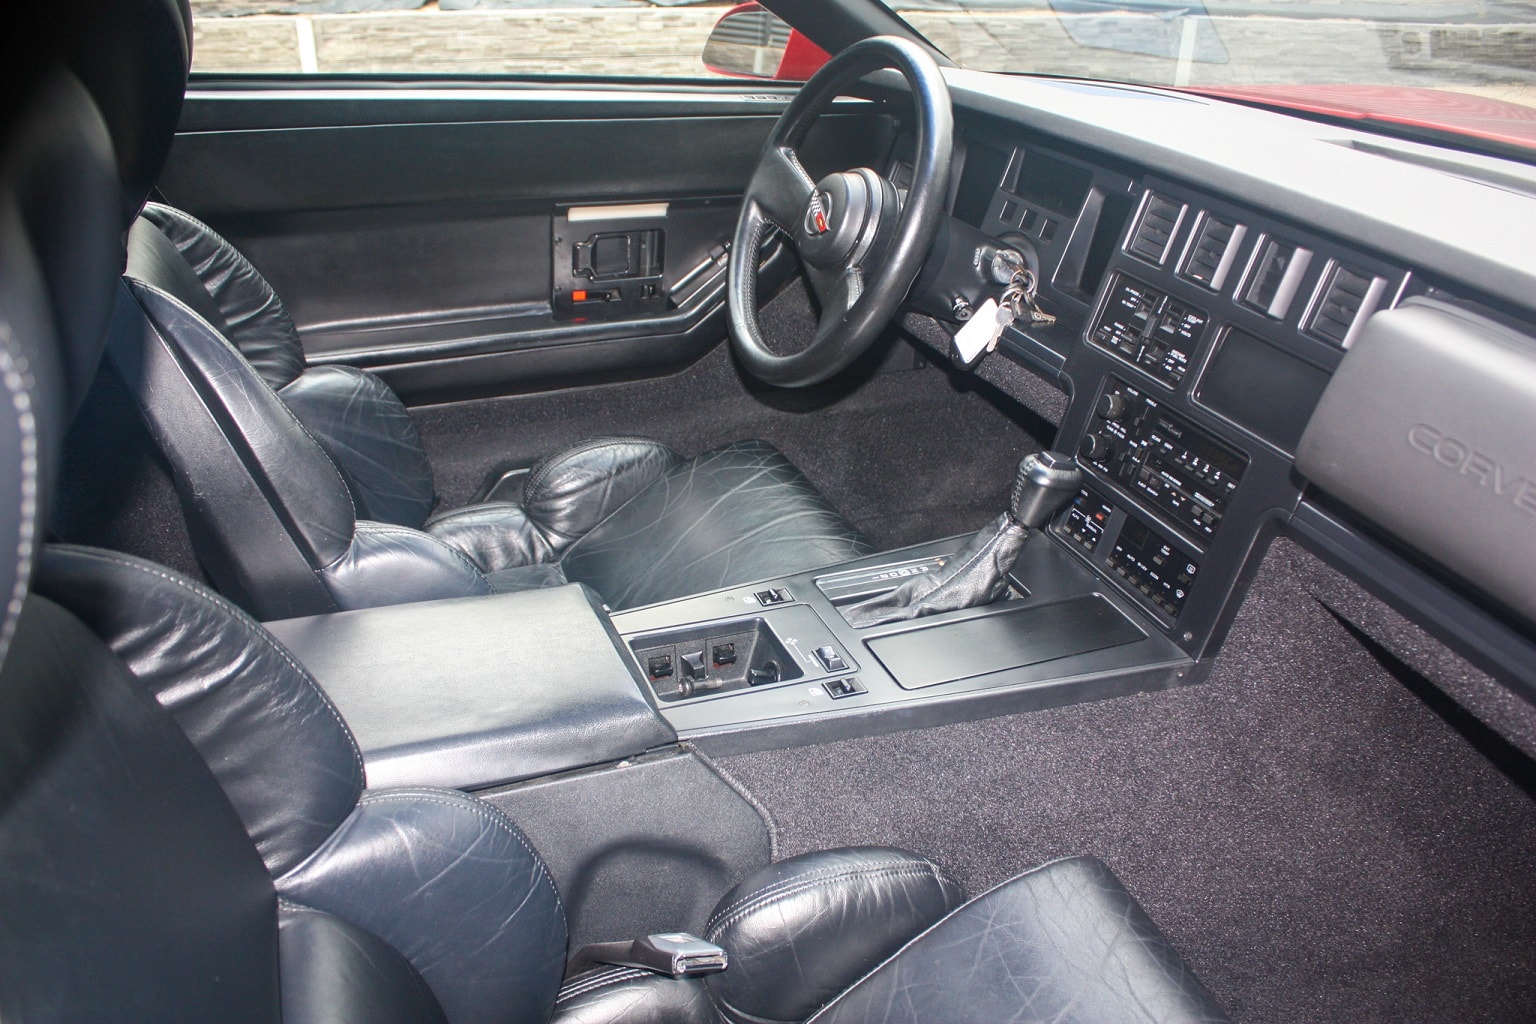 1989 Chevrolet Corvette red